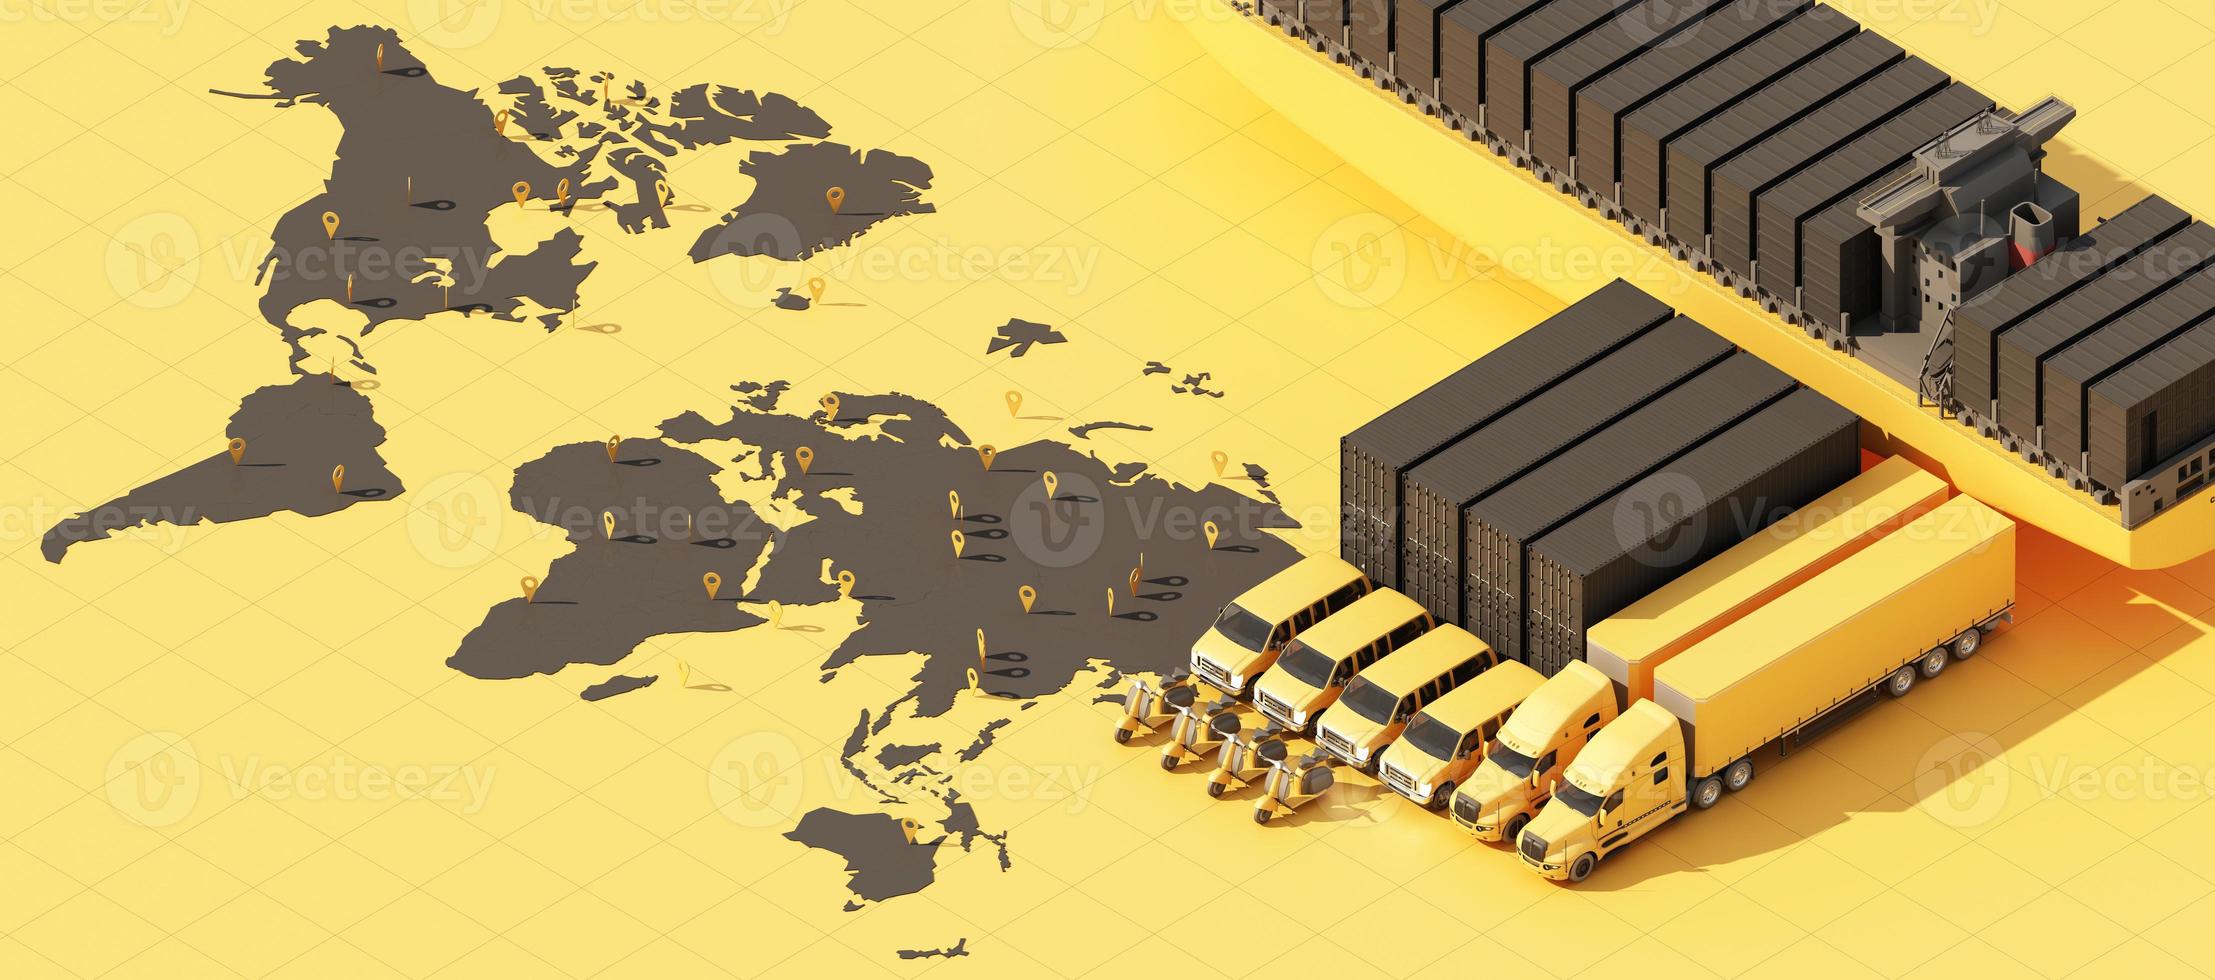 el mapa del mundo de la tierra rodeado de cajas de cartón, un barco de contenedores de carga, un avión volador, un automóvil, una furgoneta y un camión con ubicación gps sobre fondo azul vista isométrica de representación 3d foto